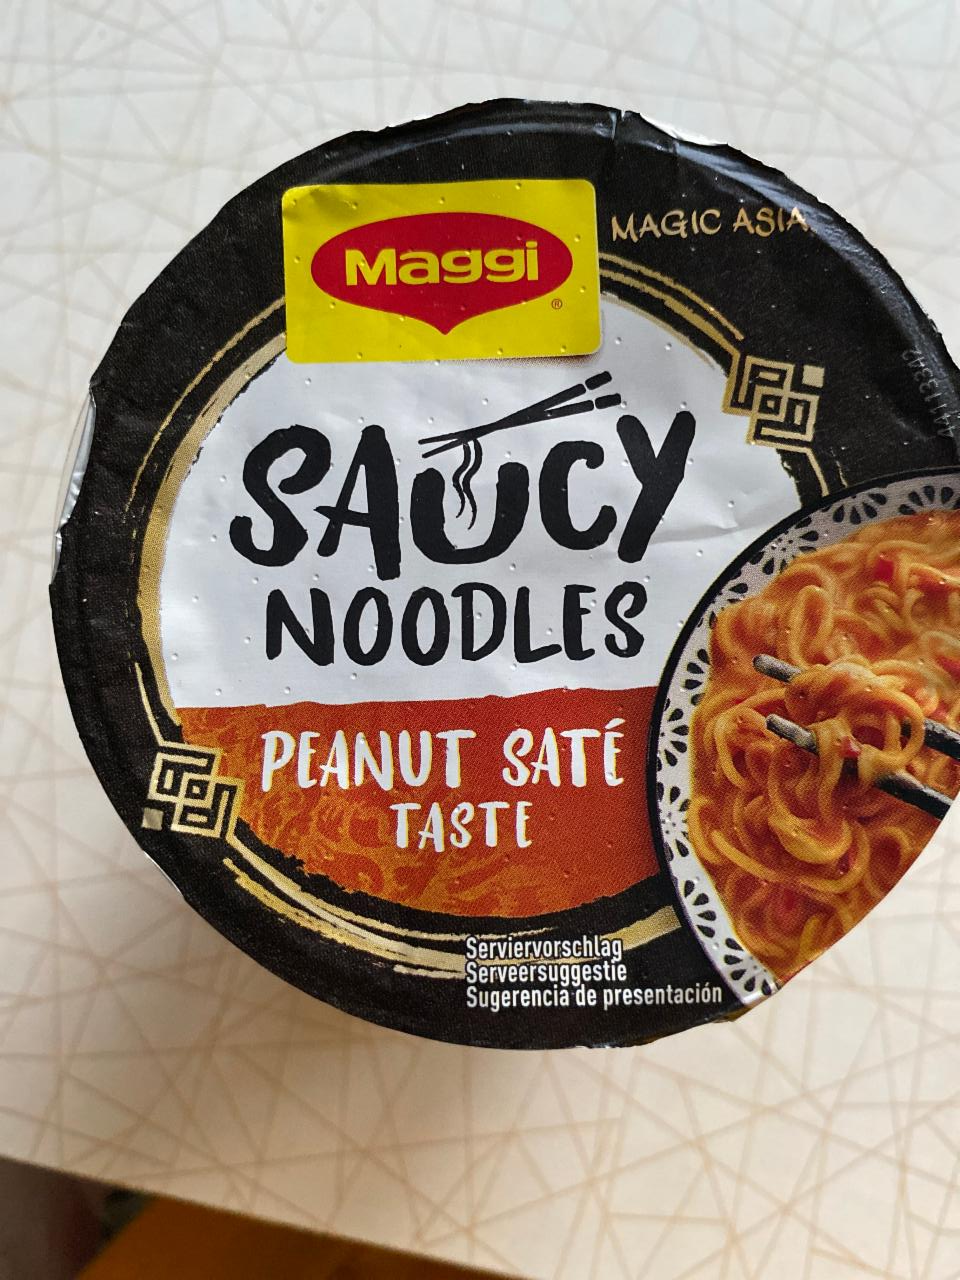 Фото - Saucy noodles peanut saté Maggi